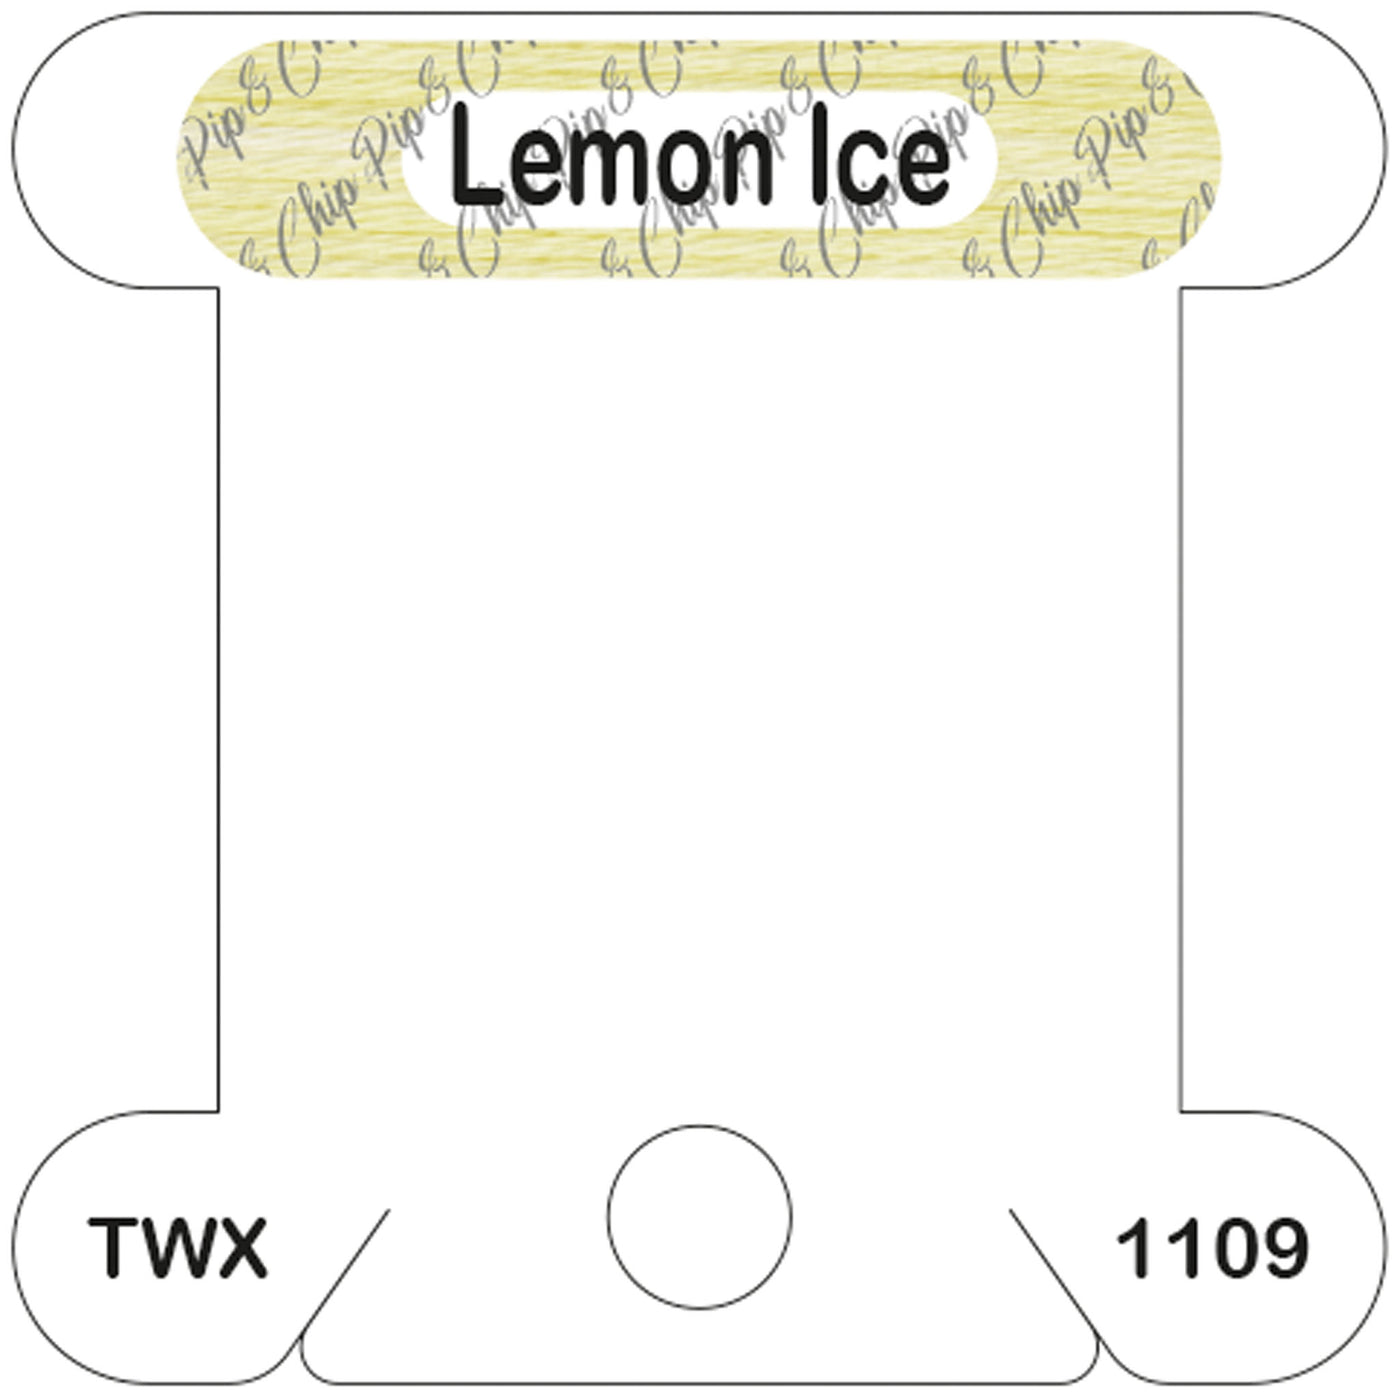 ThreadworX Lemon Ice acrylic bobbin